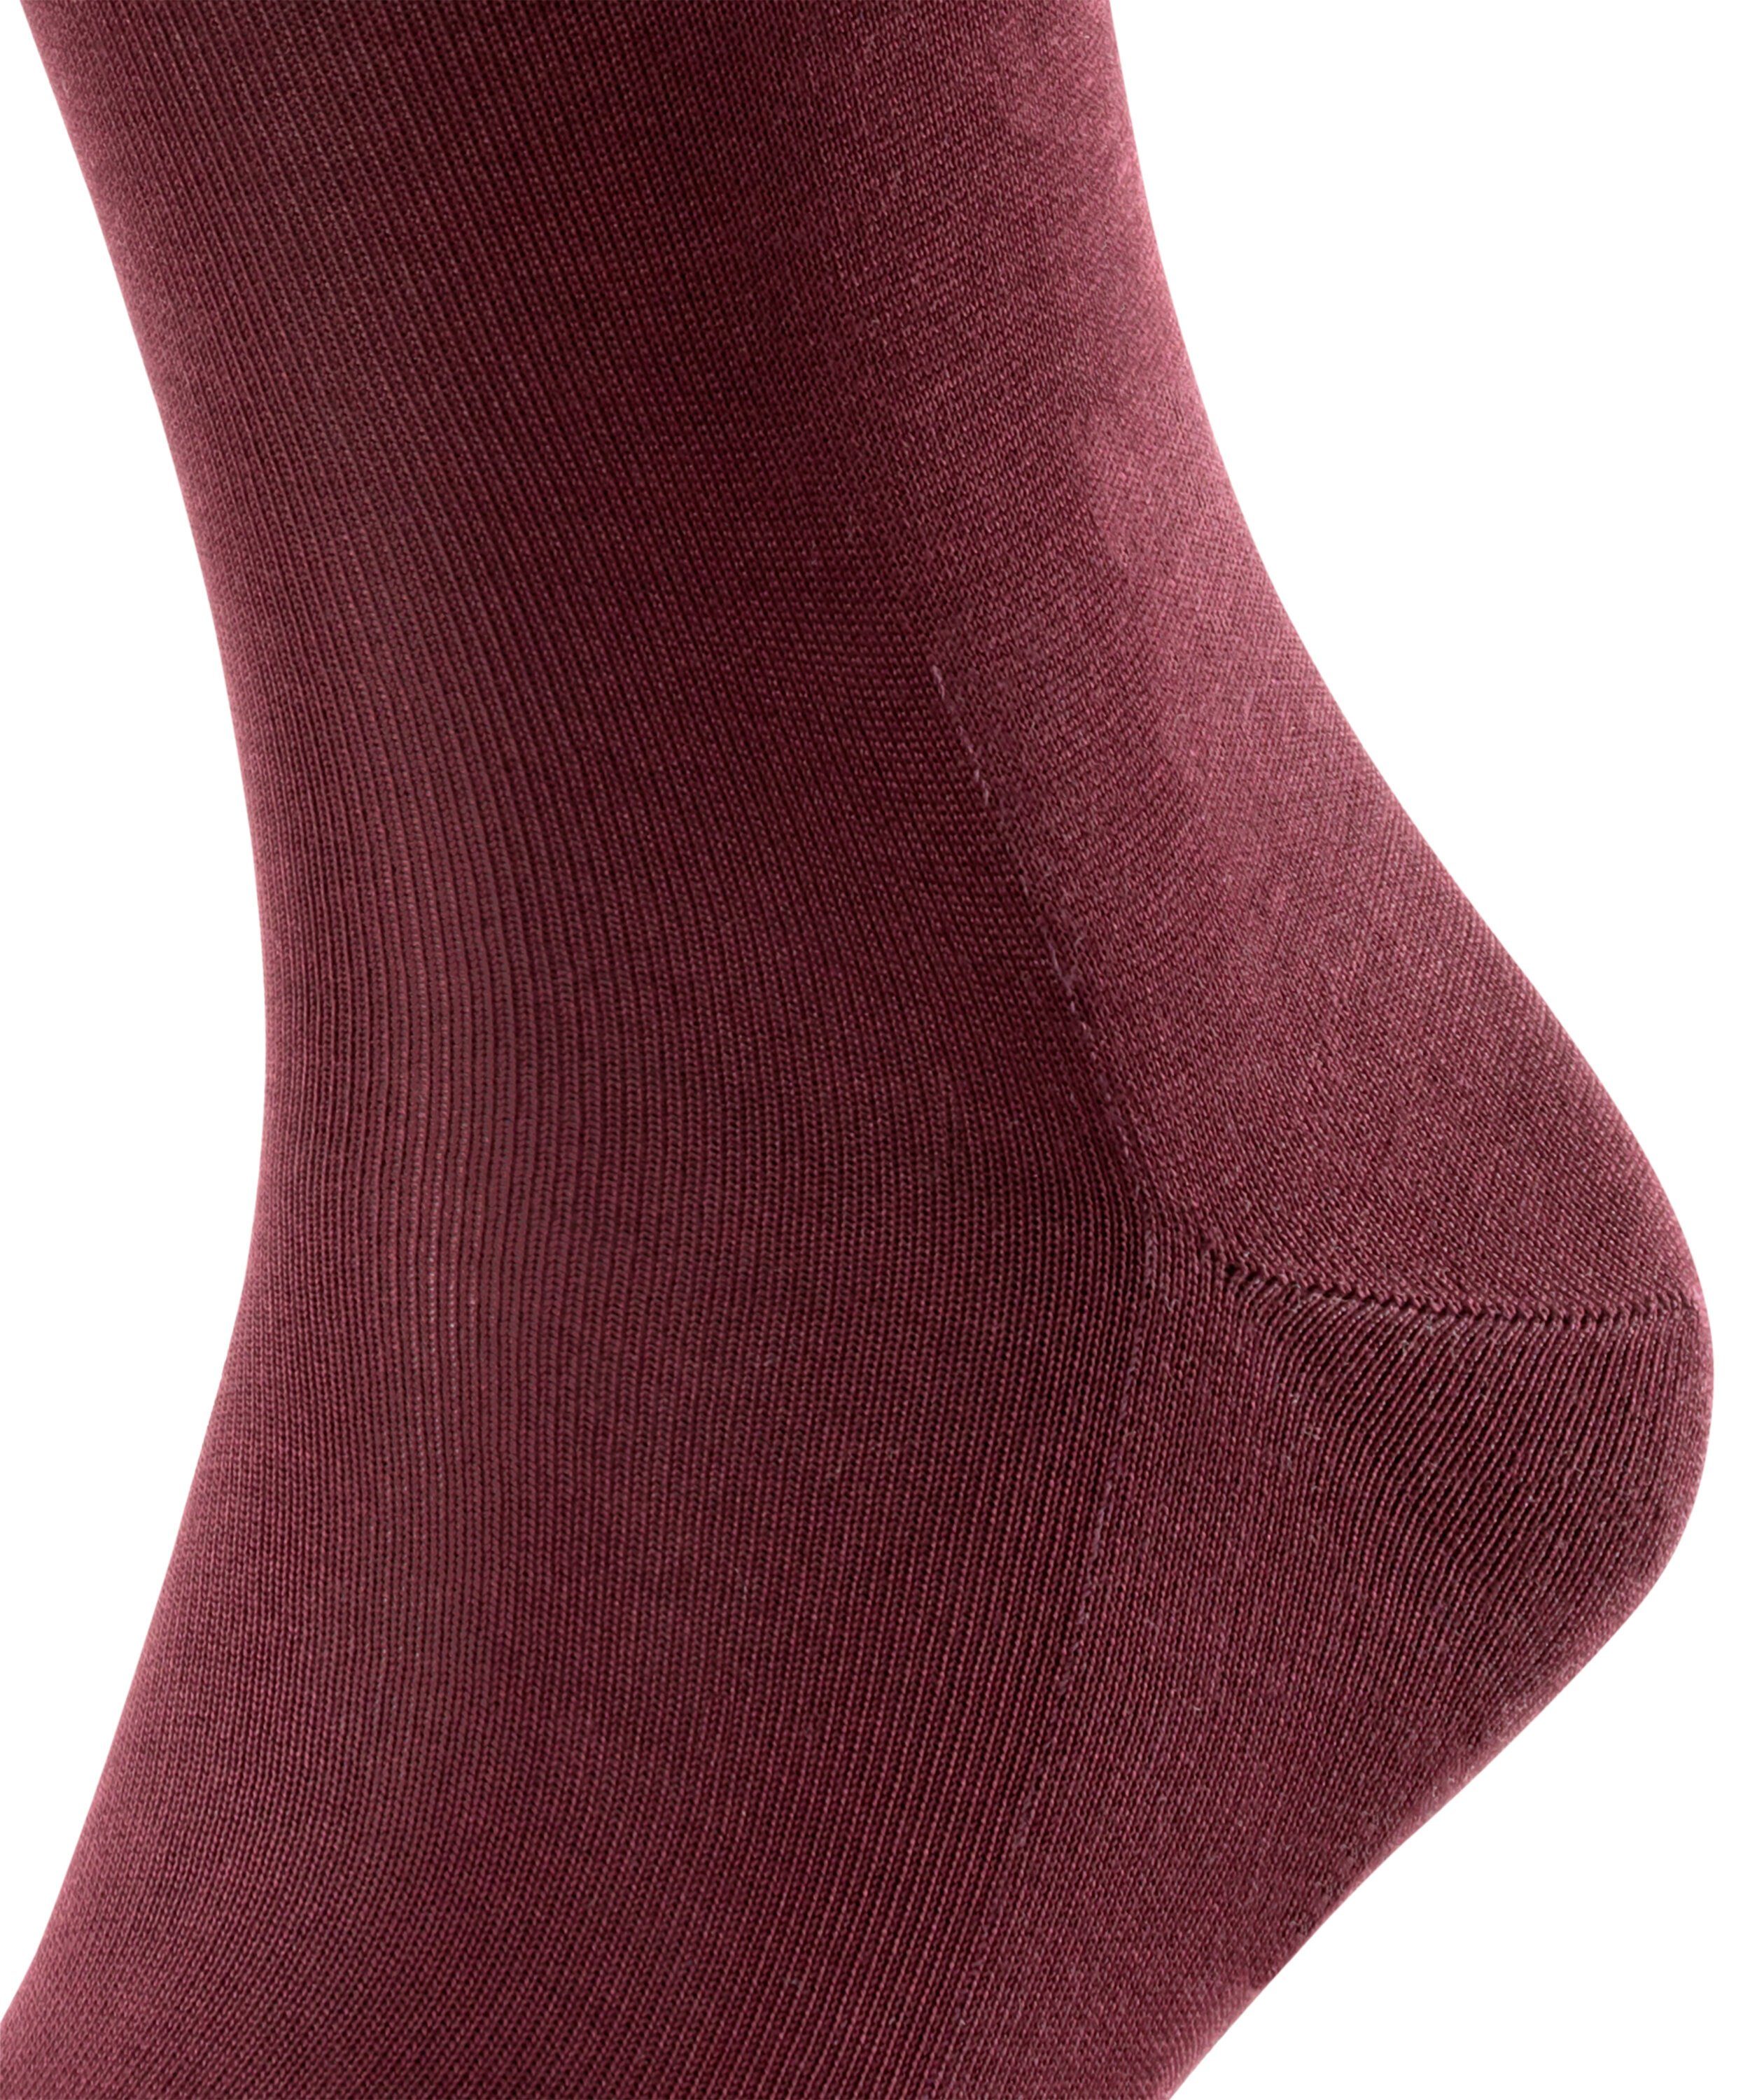 (1-Paar) Tiago (8596) FALKE Socken barolo